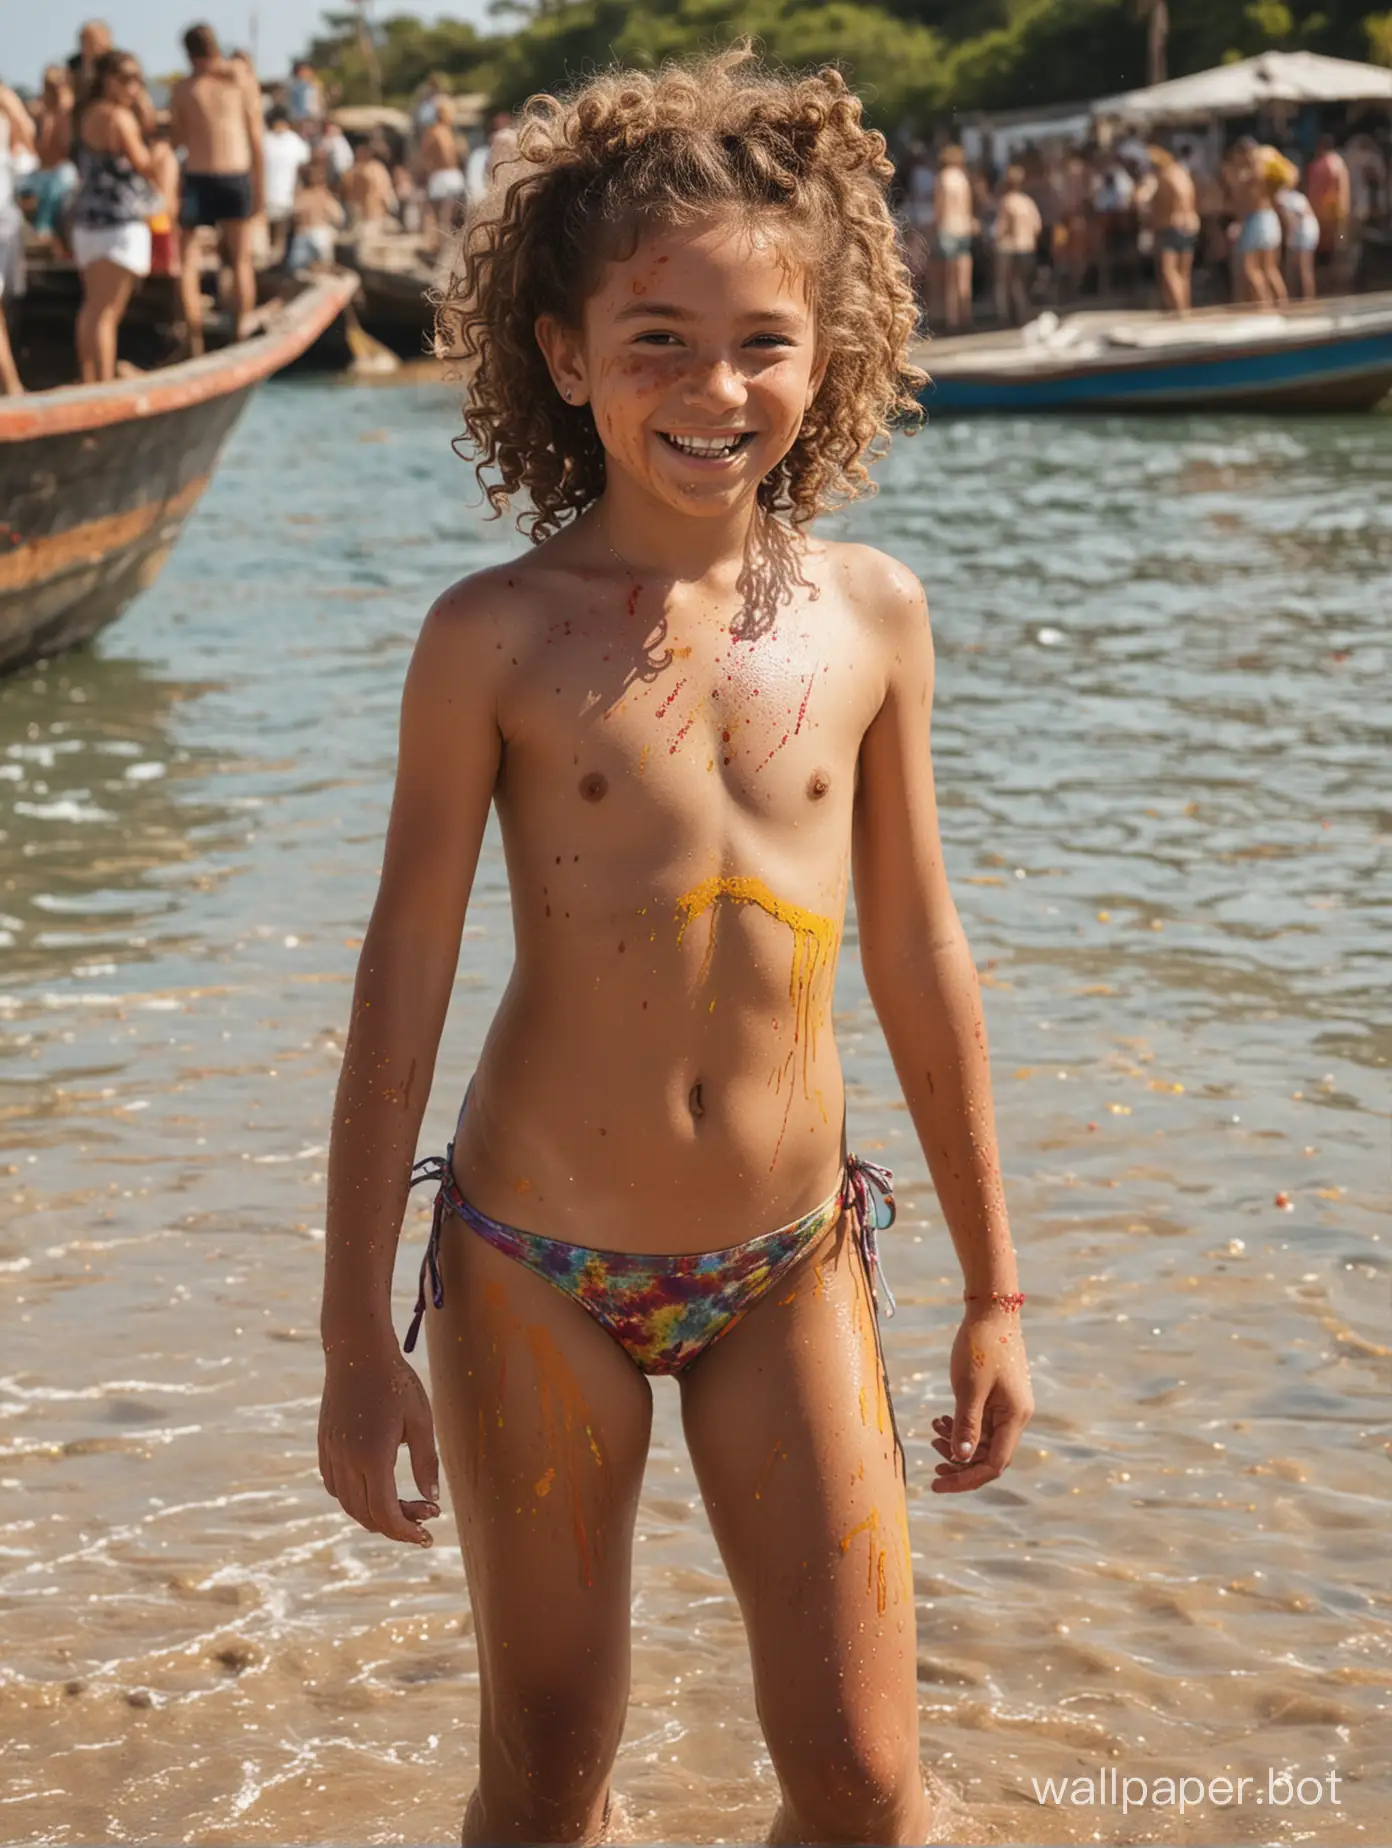 девочка 11 лет с кудрями у моря в купальнике топлес, краска на теле, праздник холи, в полный рост, динамичные позы, теплоход с пассажирами, улыбка